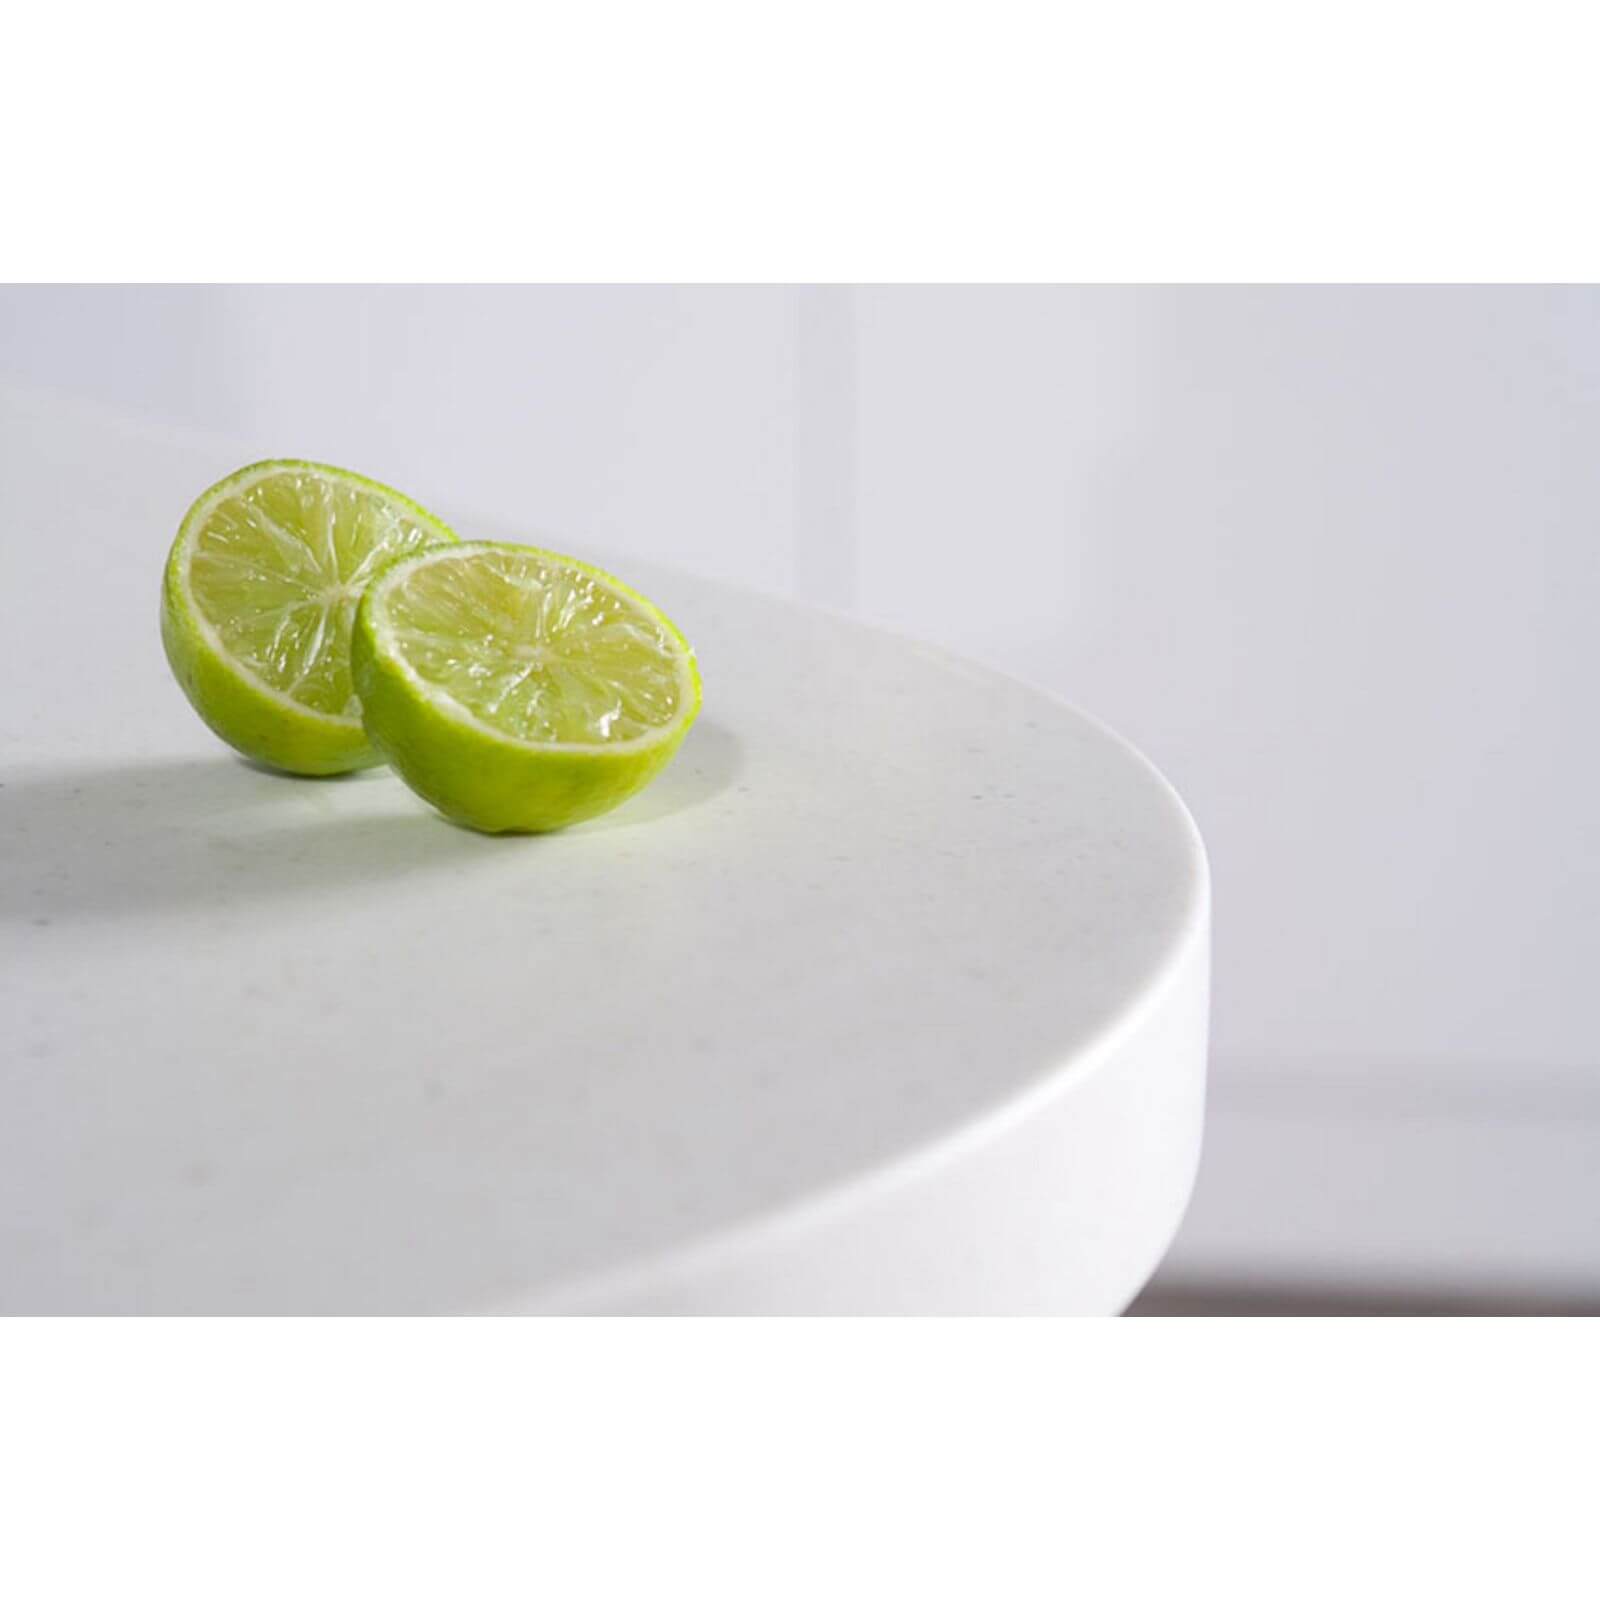 Maia Calcite Kitchen Sink Worktop - Universal Bowl - 3600 x 600 x 28mm